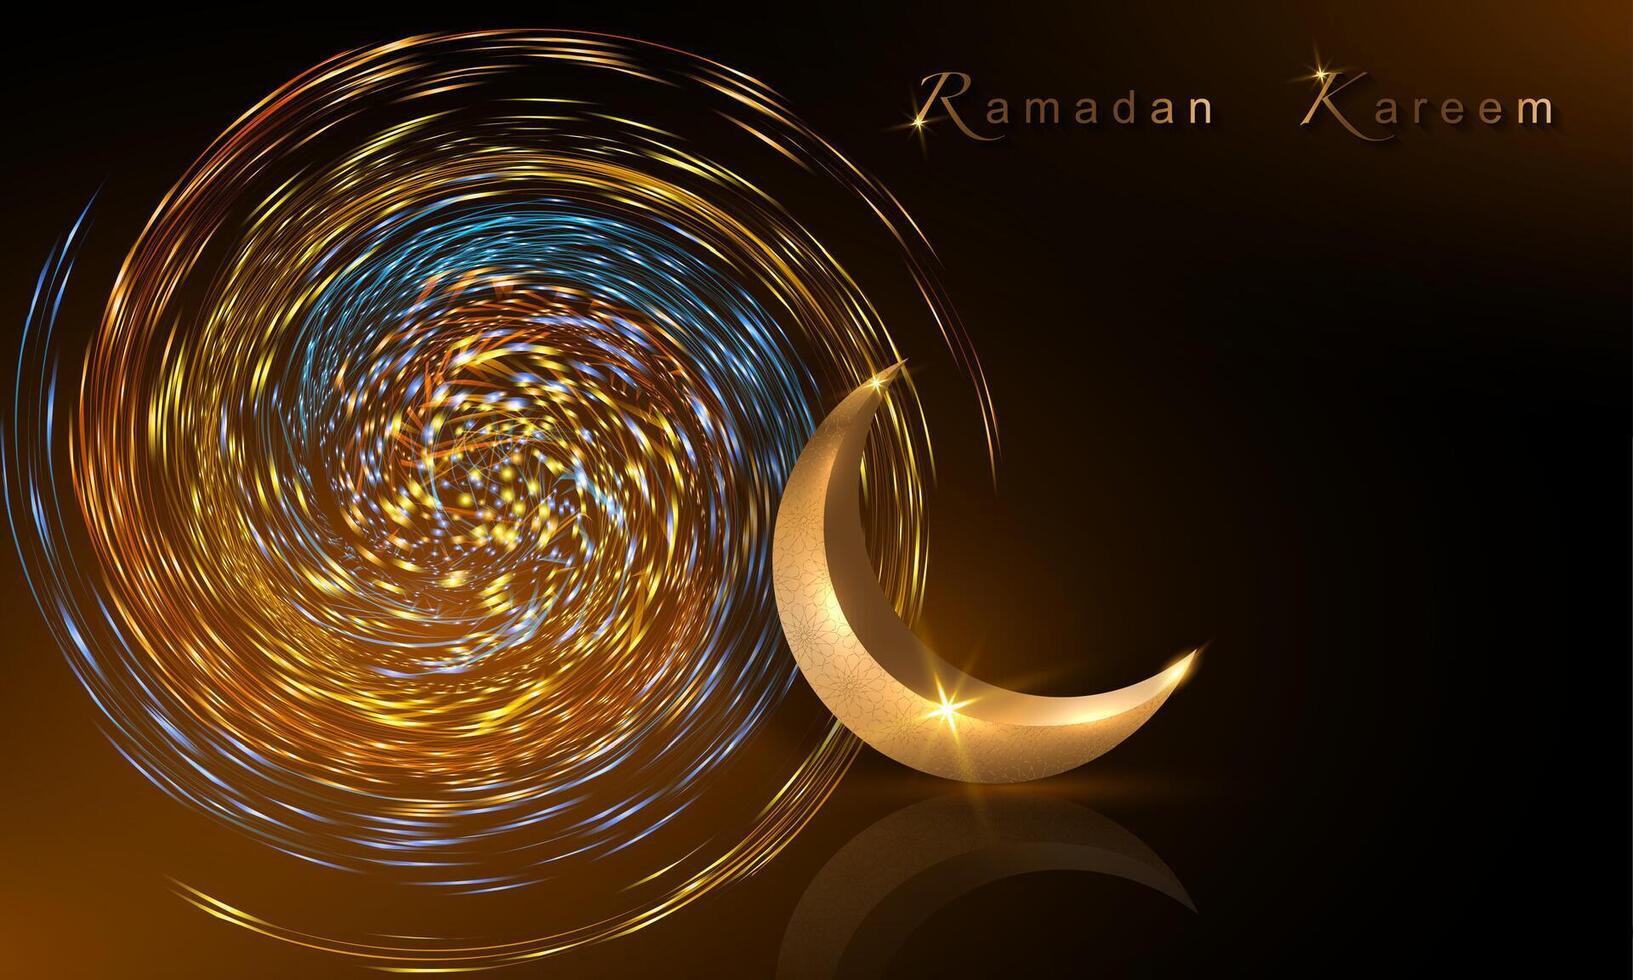 Ramadan kareem banier, 3d goud halve maan maan, vakantie groet traditioneel islamitisch. Arabisch ontwerp voor Product vitrine, presentatie, kunstmatig, baseren, Ramadan verkoop, spiraal lichten kleurrijk achtergrond vector